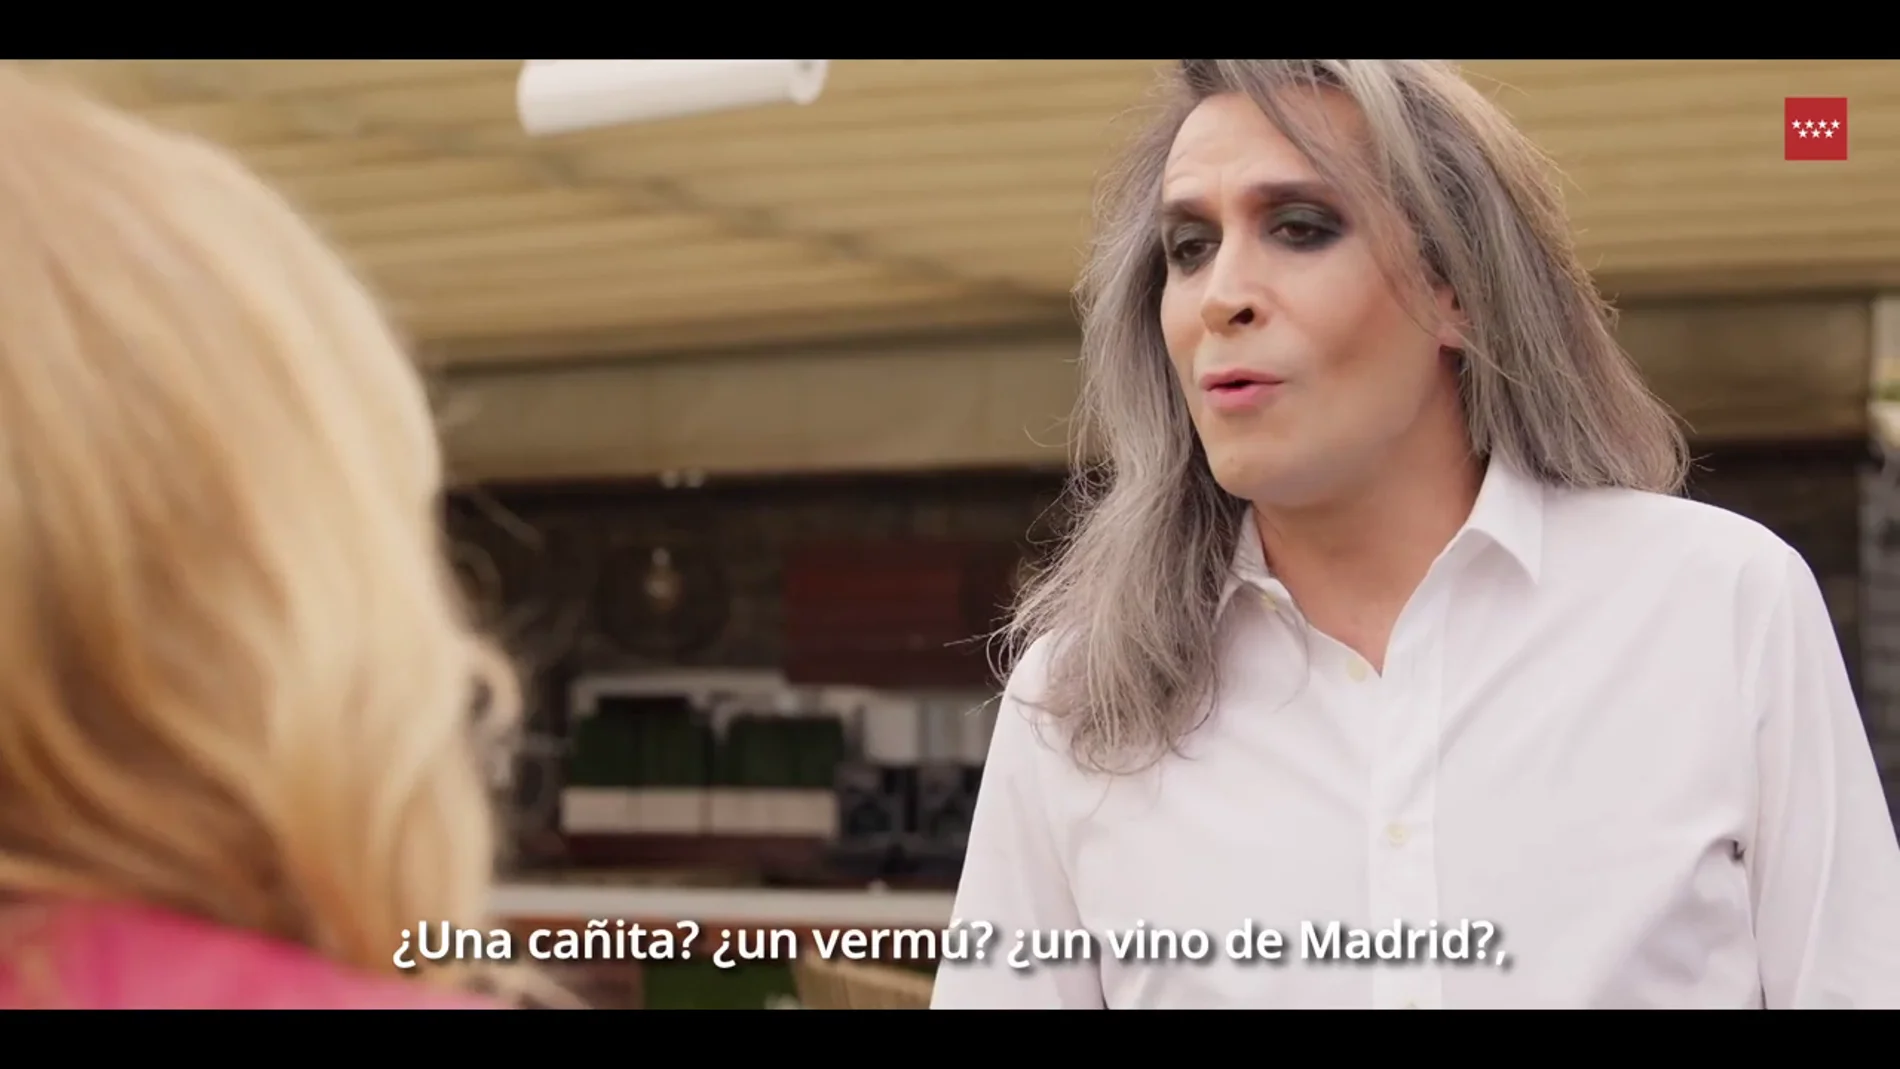  La polémica sobre el vídeo de promoción de Madrid con Mario Vaquerizo: "Es imposible hacerlo peor"